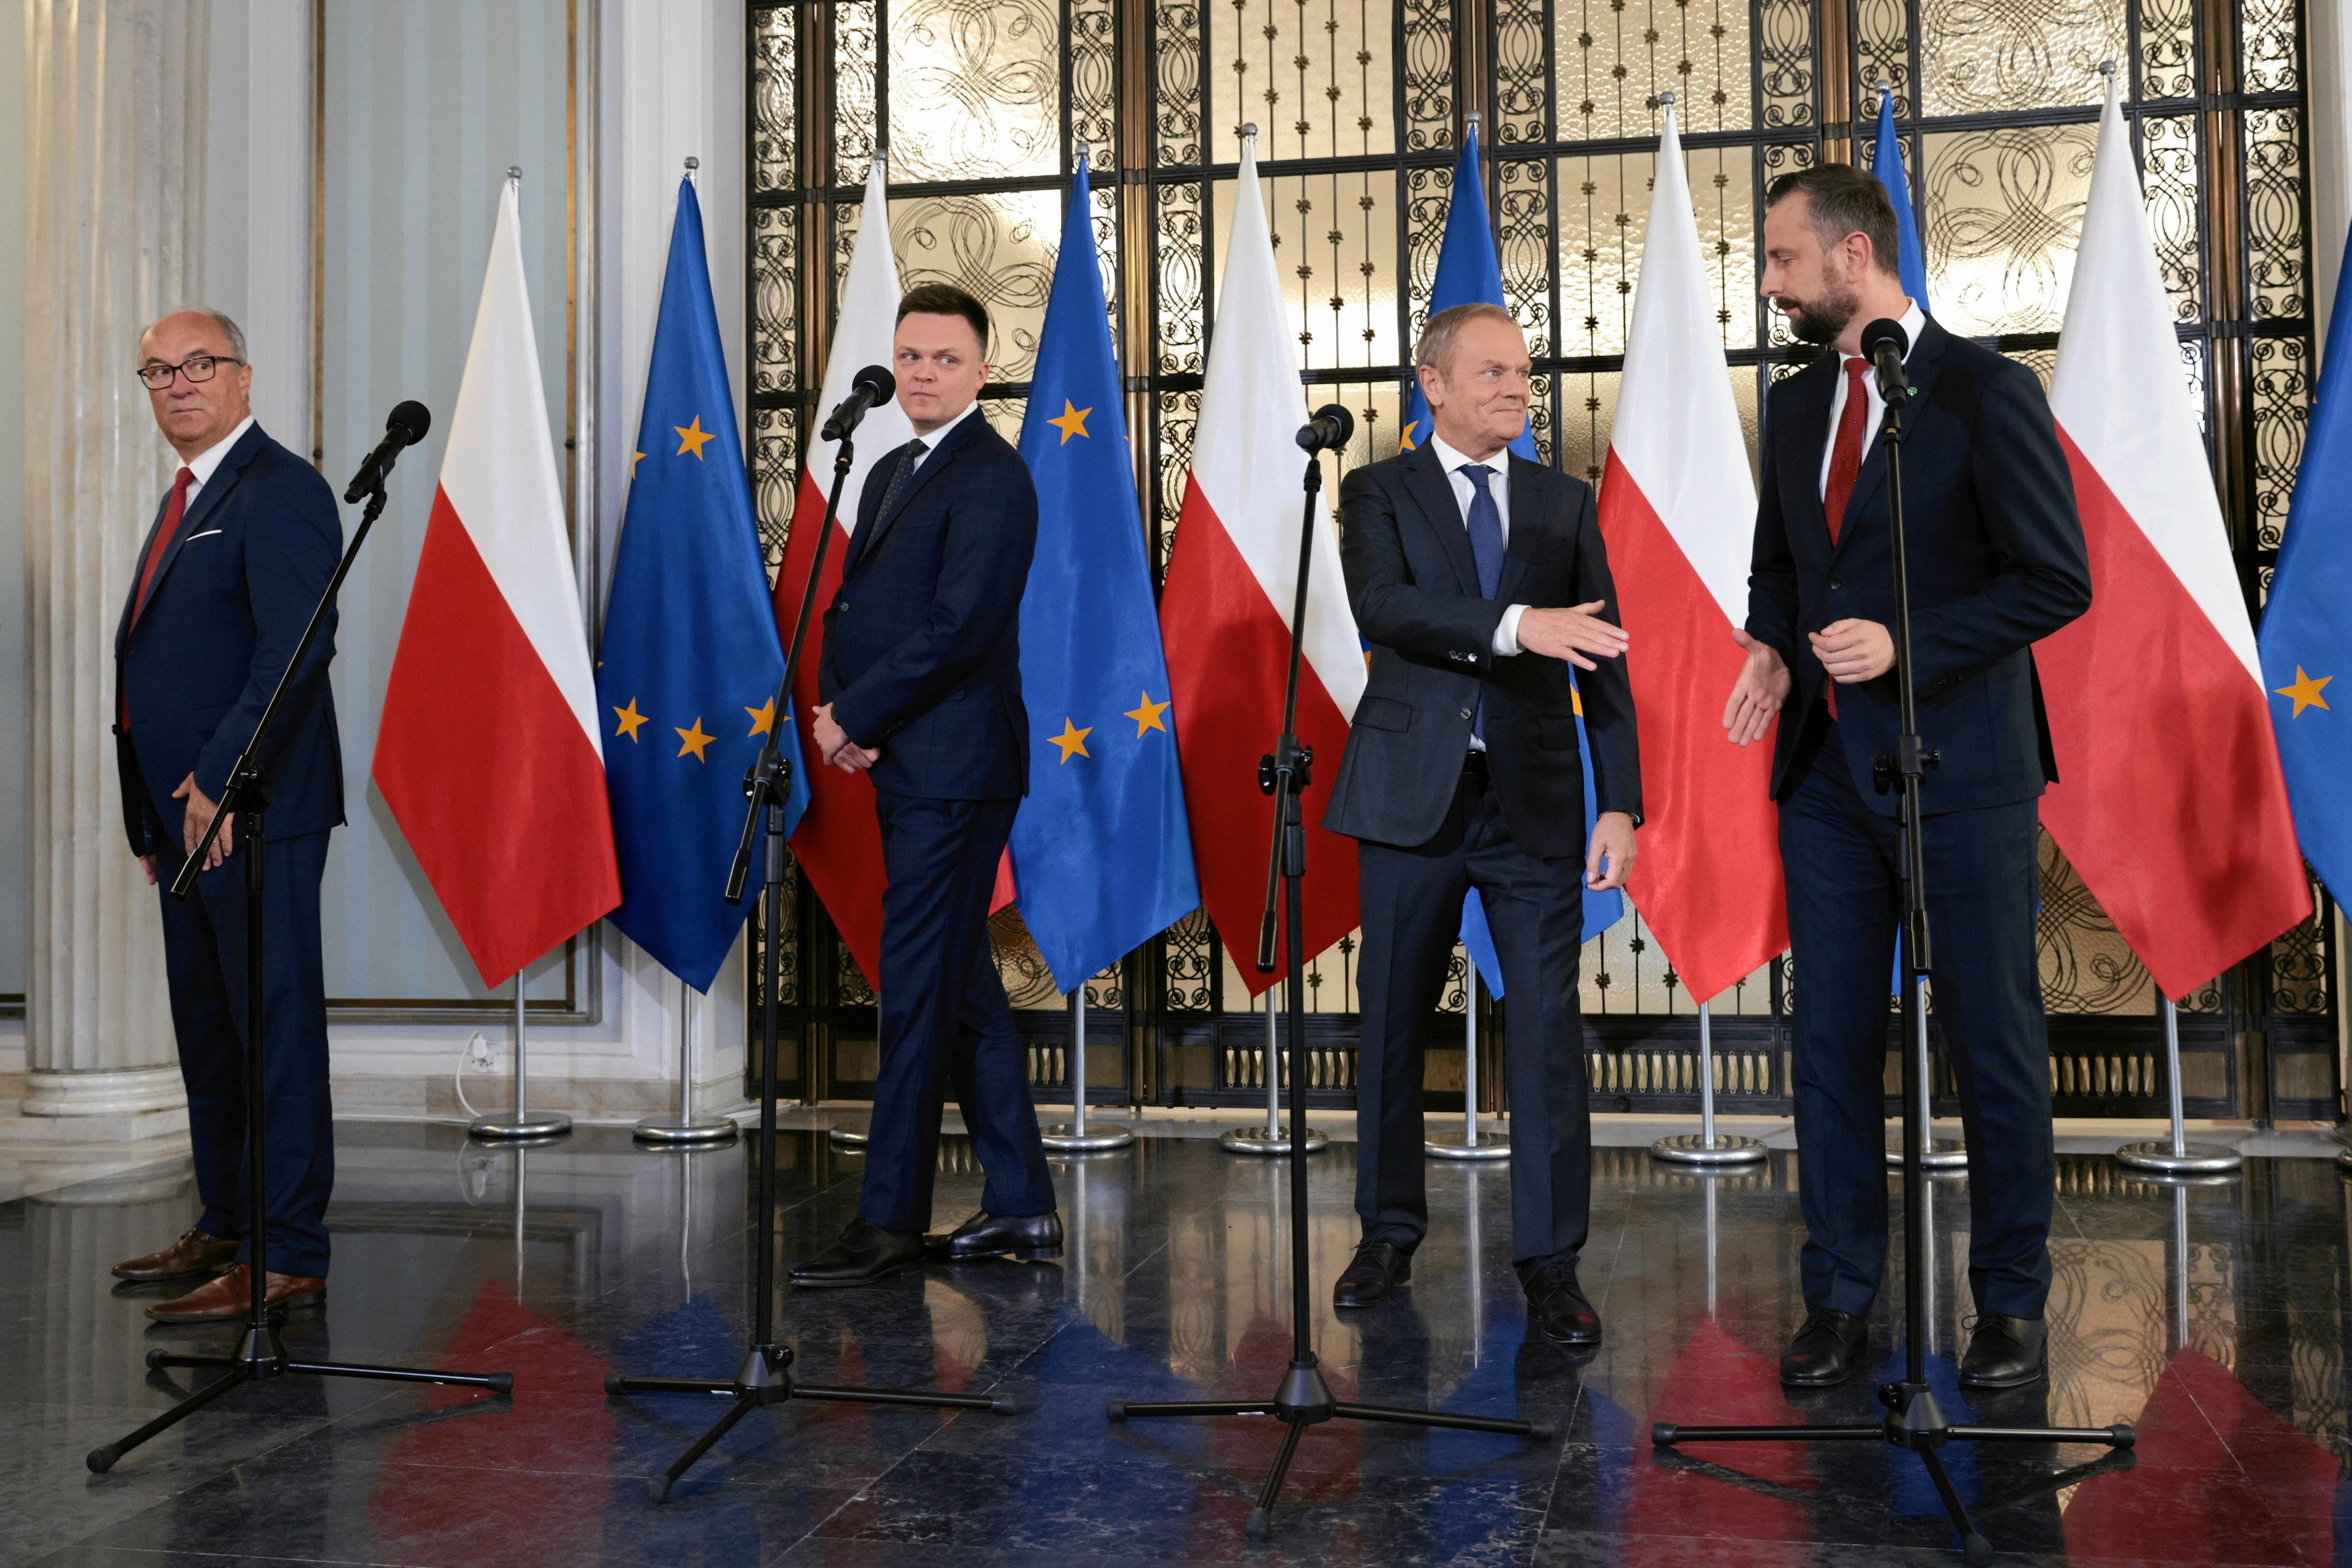 Czterech mężczyzn (od lewej: Czarzasty, Hołownia, Tusk, Kosiniak-Kamysz) stoi przed mikrofonami, ale każdy patrzy w inną stronę